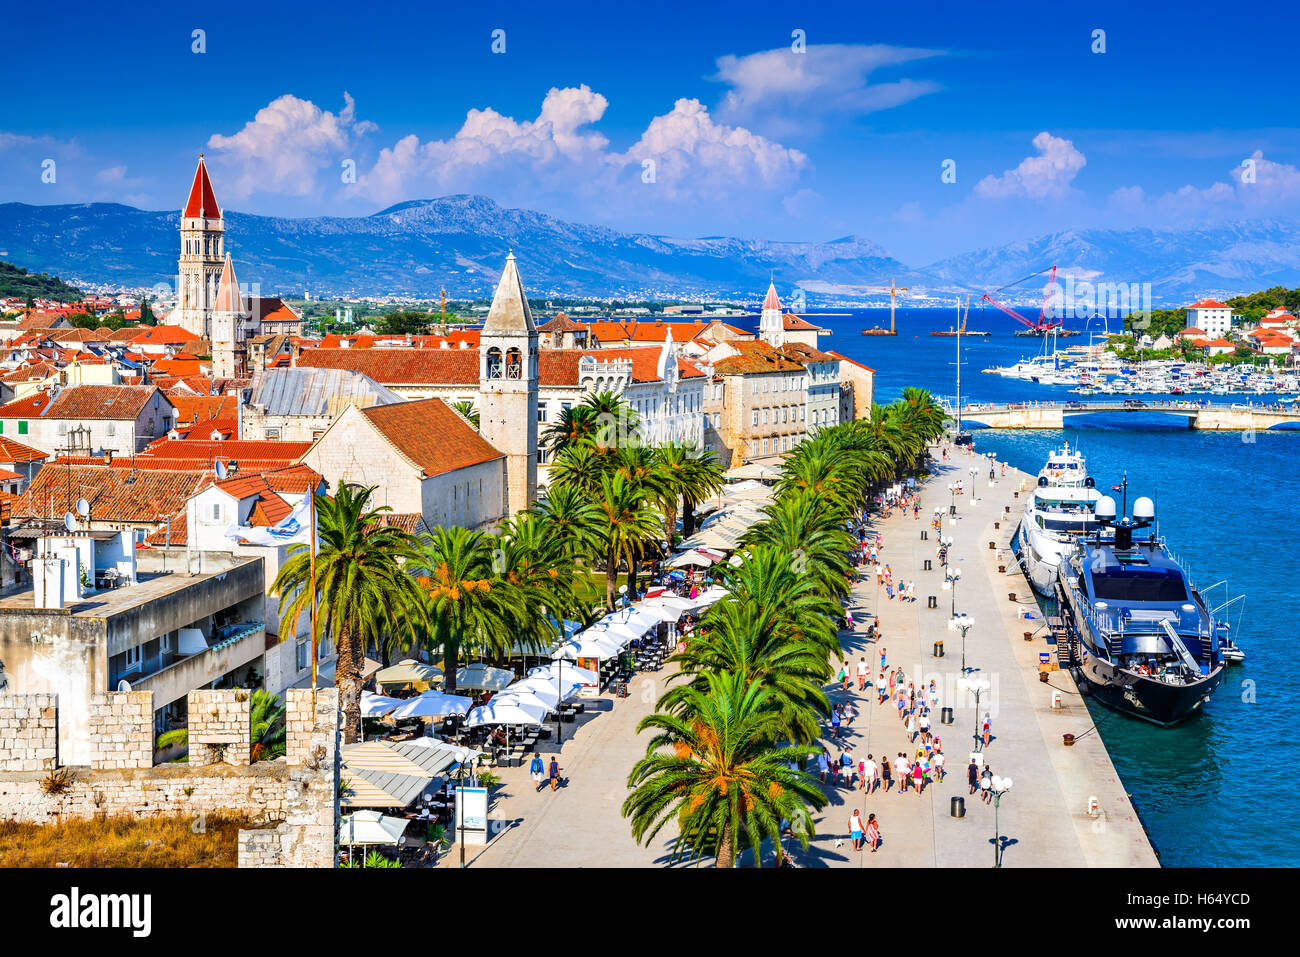 Trogir, Croatia. Sunny promenade along the pier of old Venetian town, Dalmatian Coast in Croatia. Stock Photo